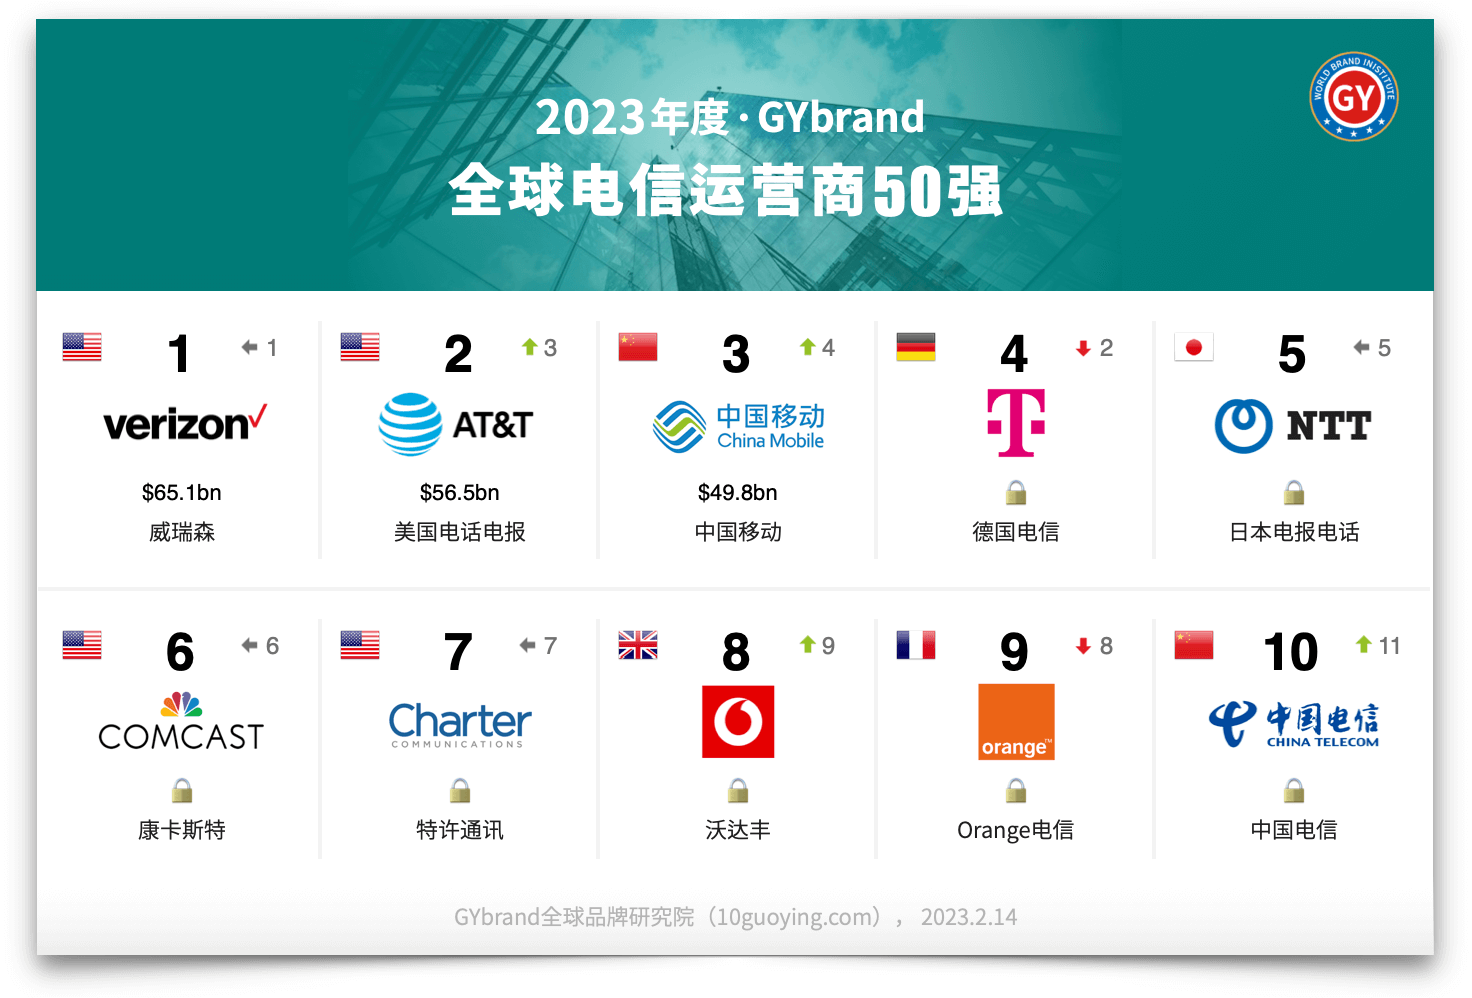 2023年全球电信品牌价值排行榜前十名单